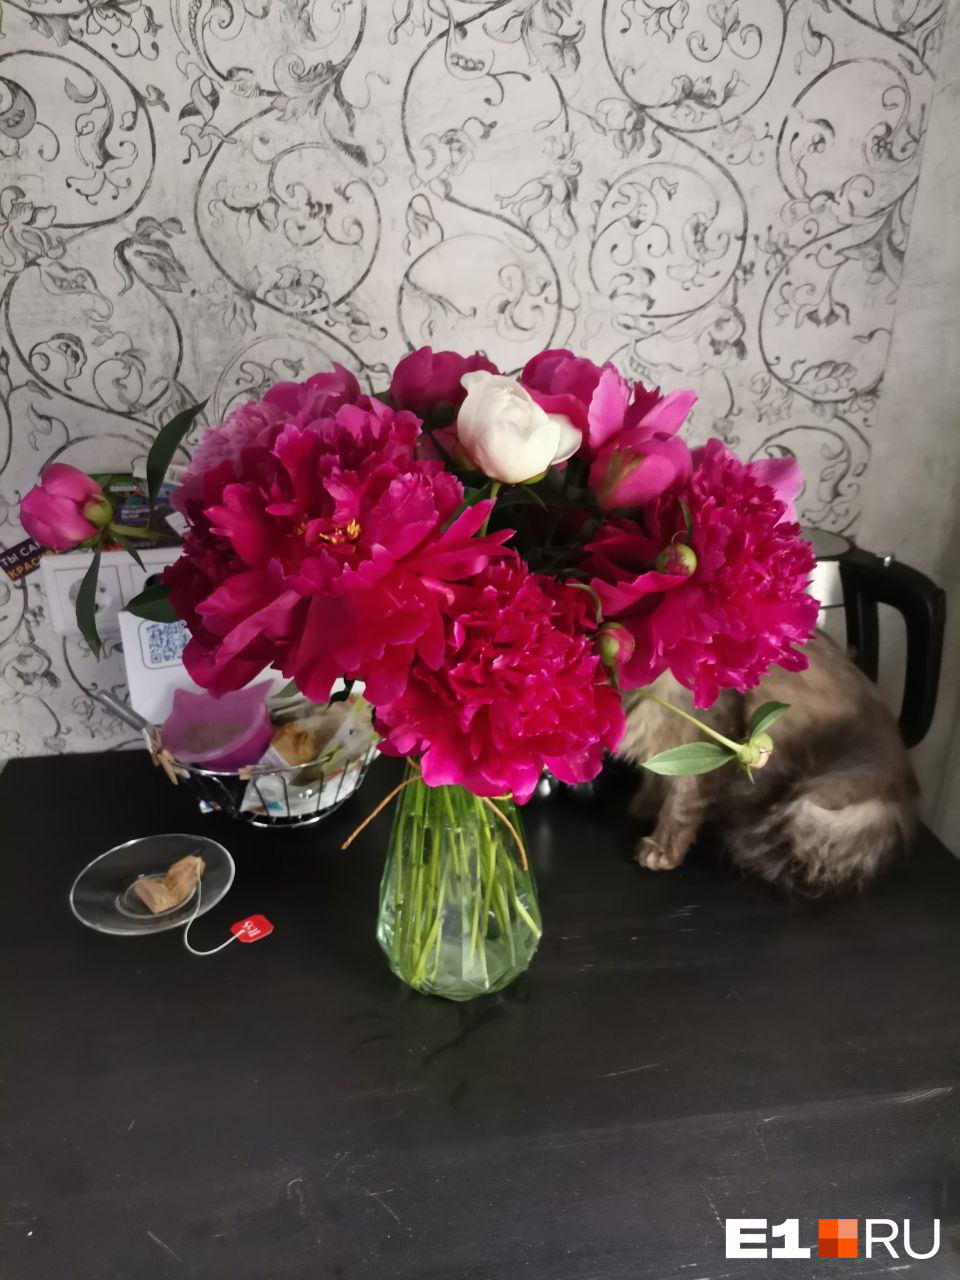 Эти цветы стоили по 40 рублей за штуку